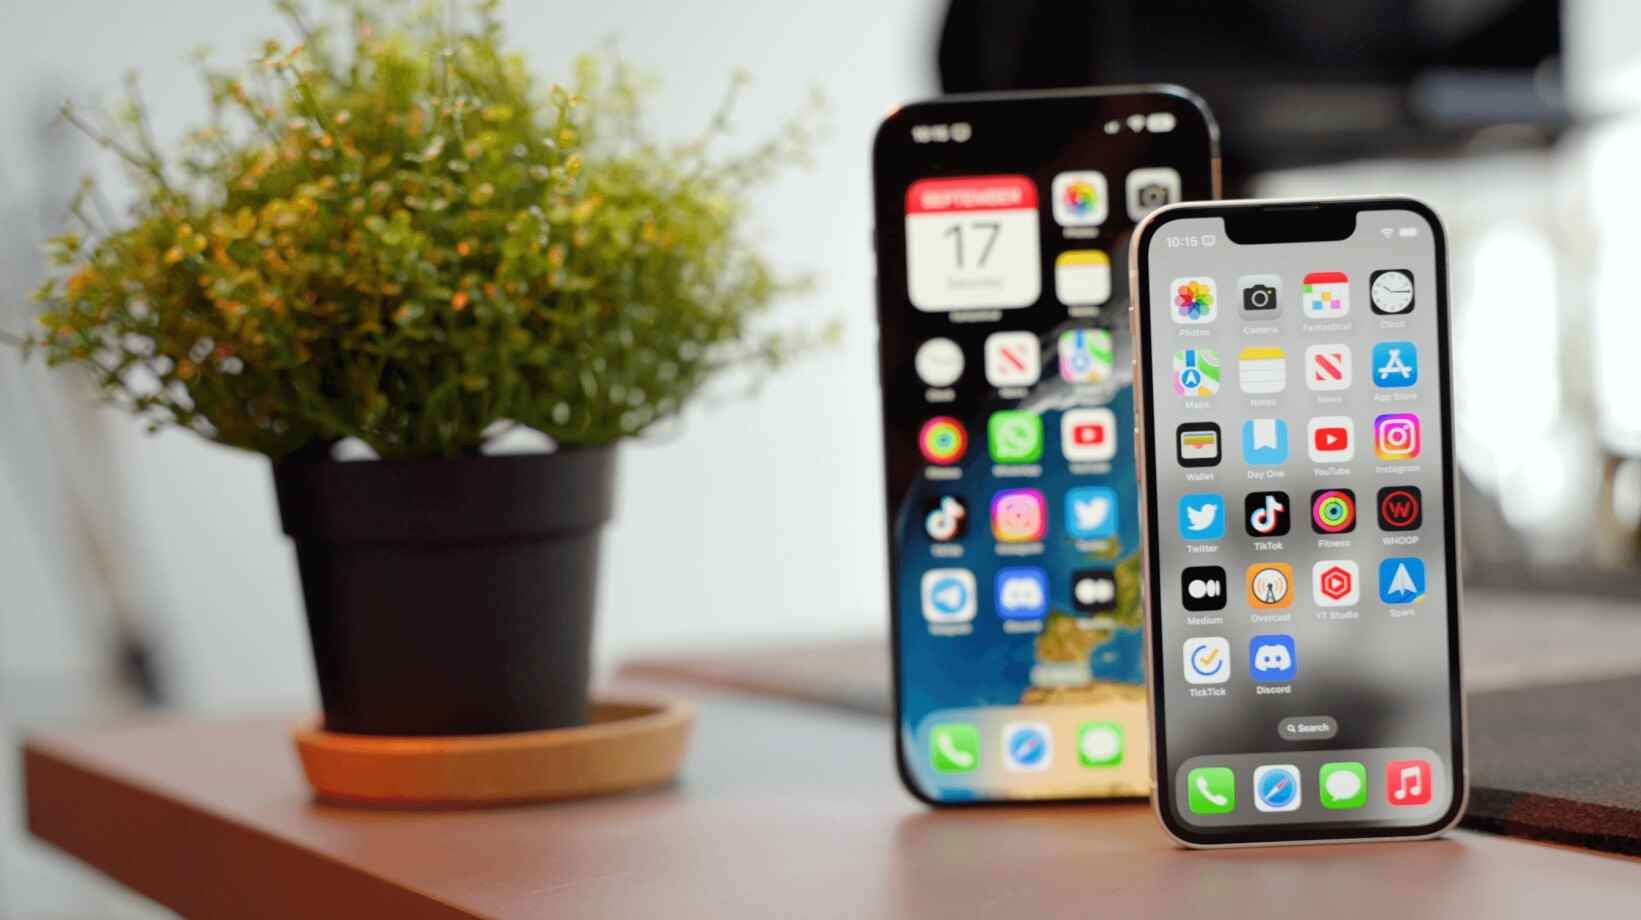 Yoğun bir multimedya kullanıcısıysanız, en büyük iPhone hala en iyi iPhone'dur.  - iPhone 15 Pro Max: Apple'ın şimdiye kadarki en iyi büyük iPhone'u, sonunda küçük telefon kullanıcılarının geçiş yapmasını sağladı mı?